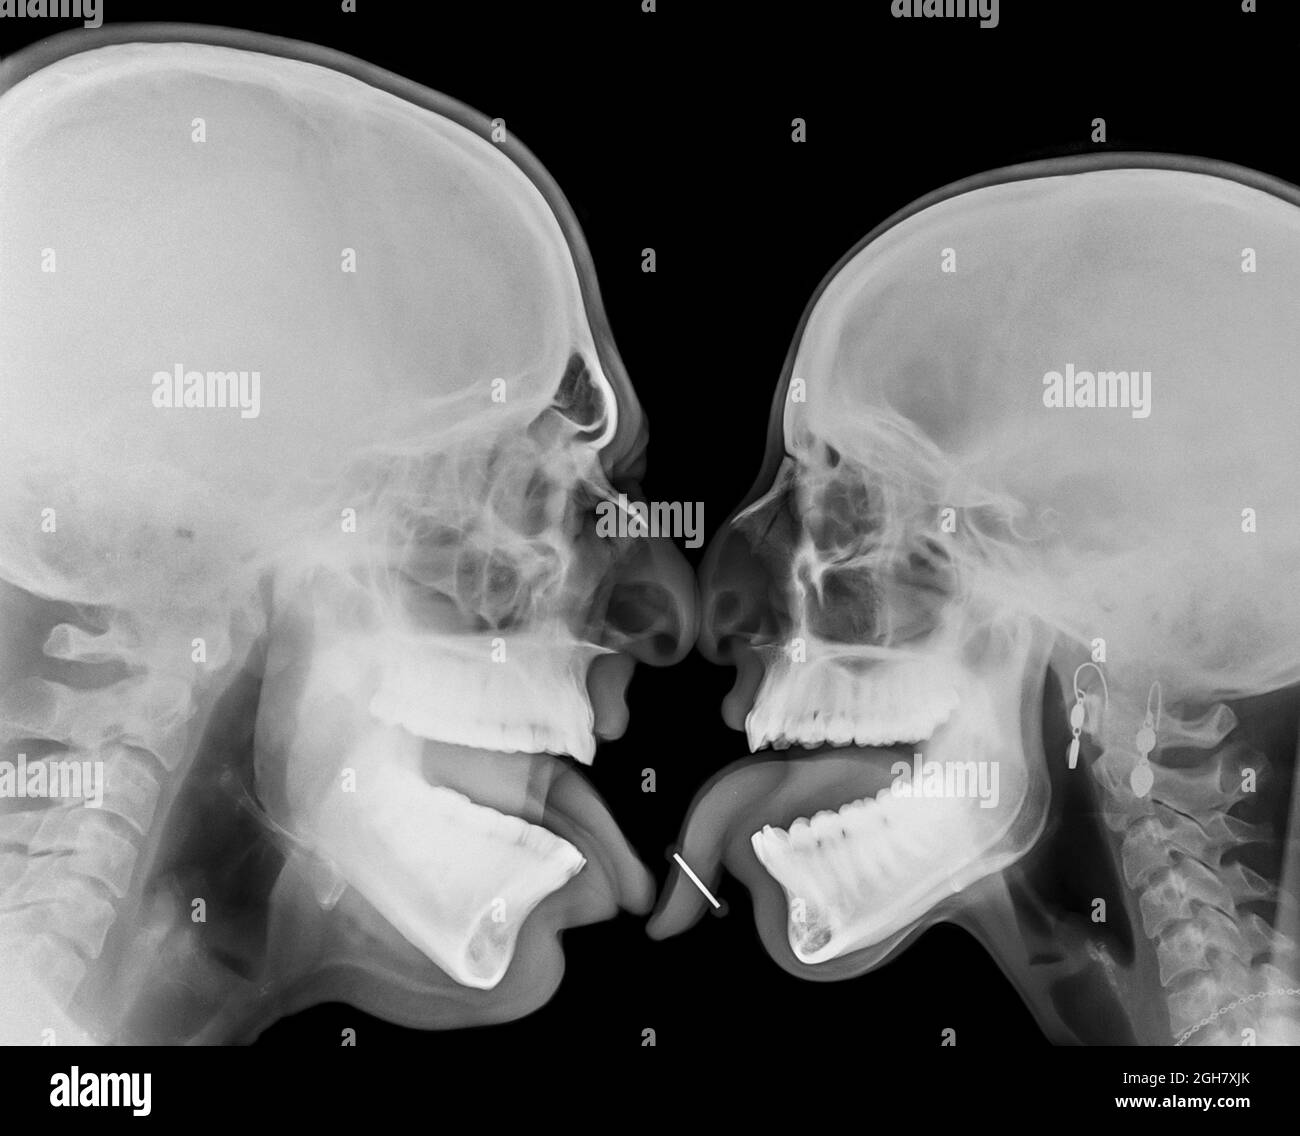 Coppia baciante. Due persone che baciano sotto la lingua traforata dai raggi X. Foto Stock